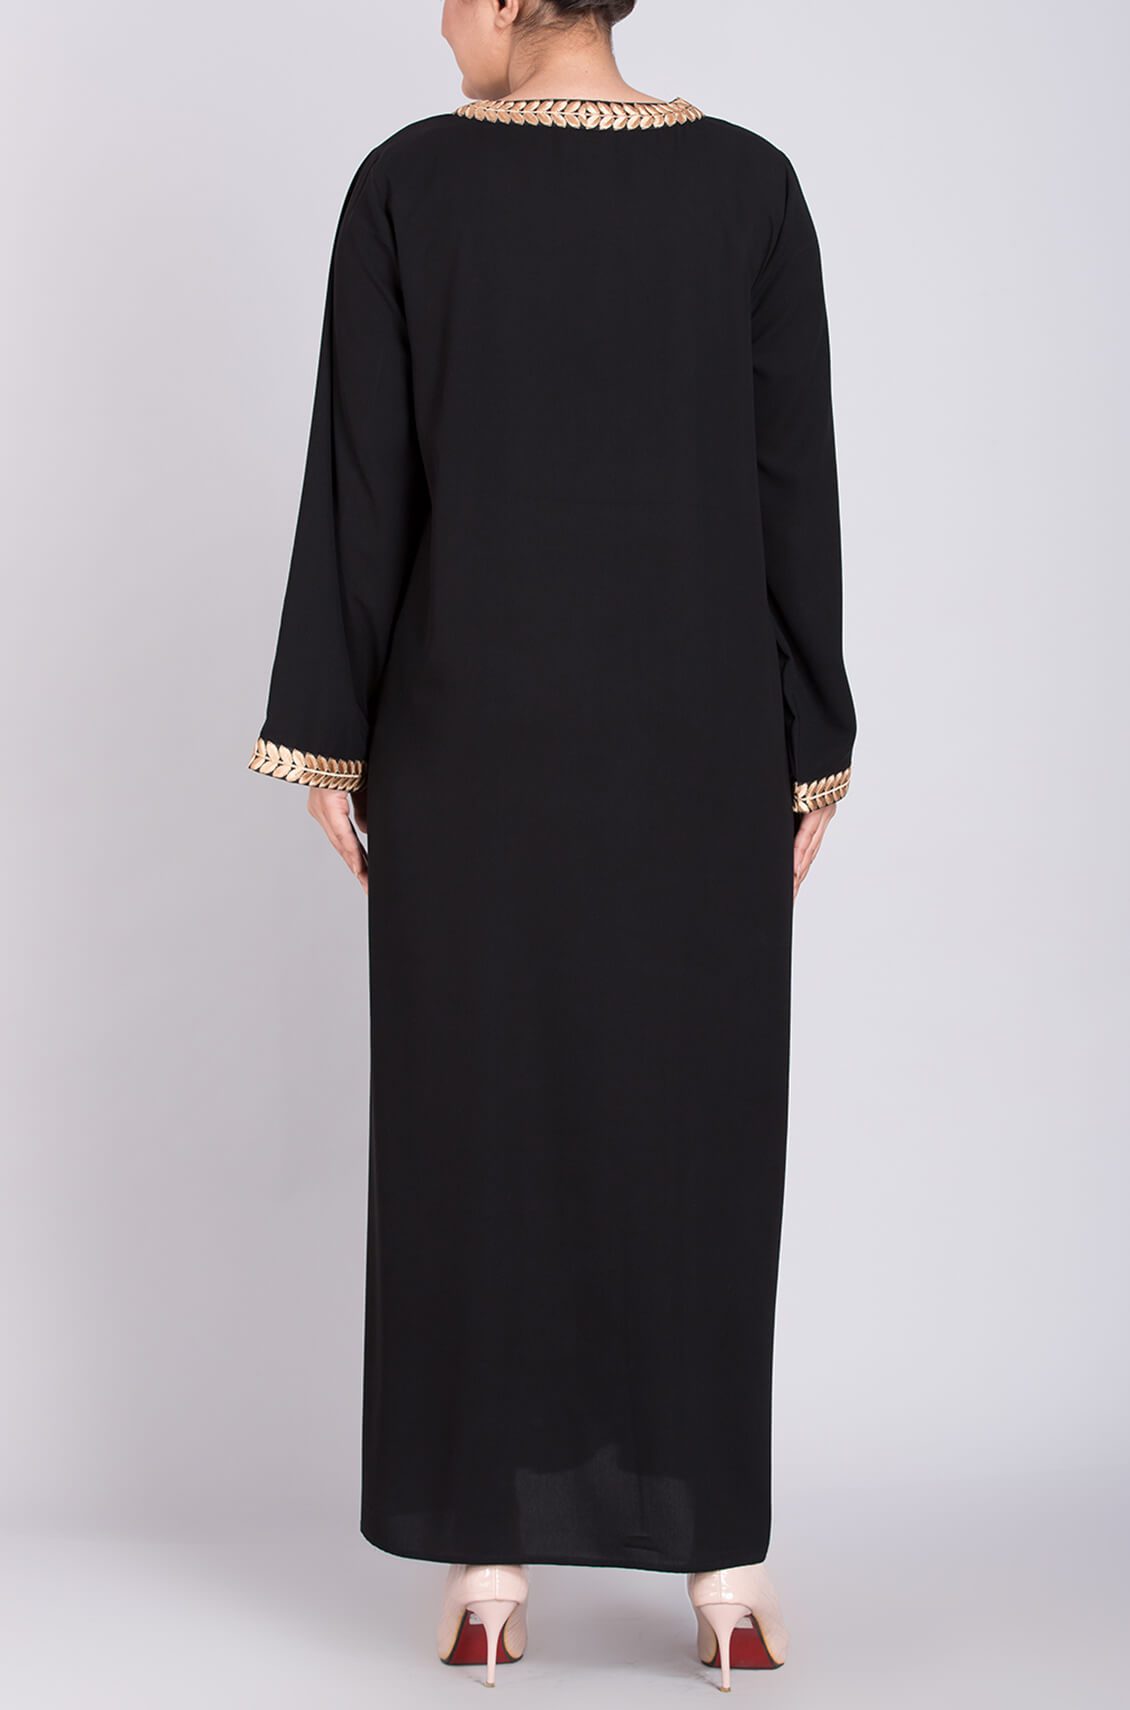 black abaya